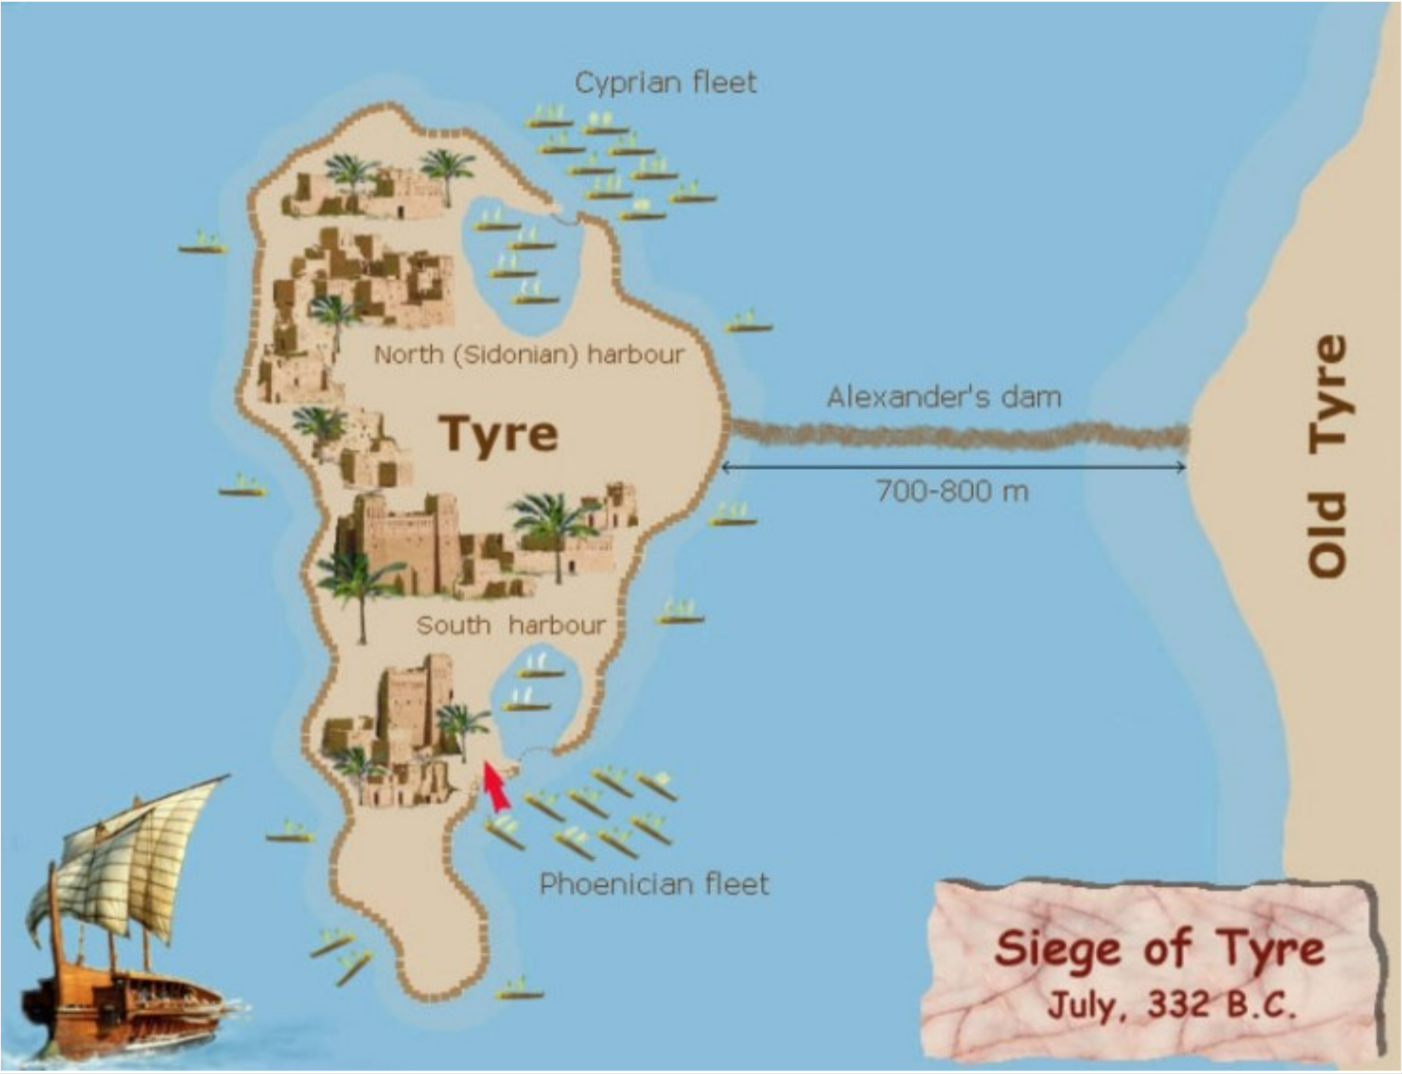 두로와-시돈-the-Tyre-and-Sidon-네이버-블로그.png